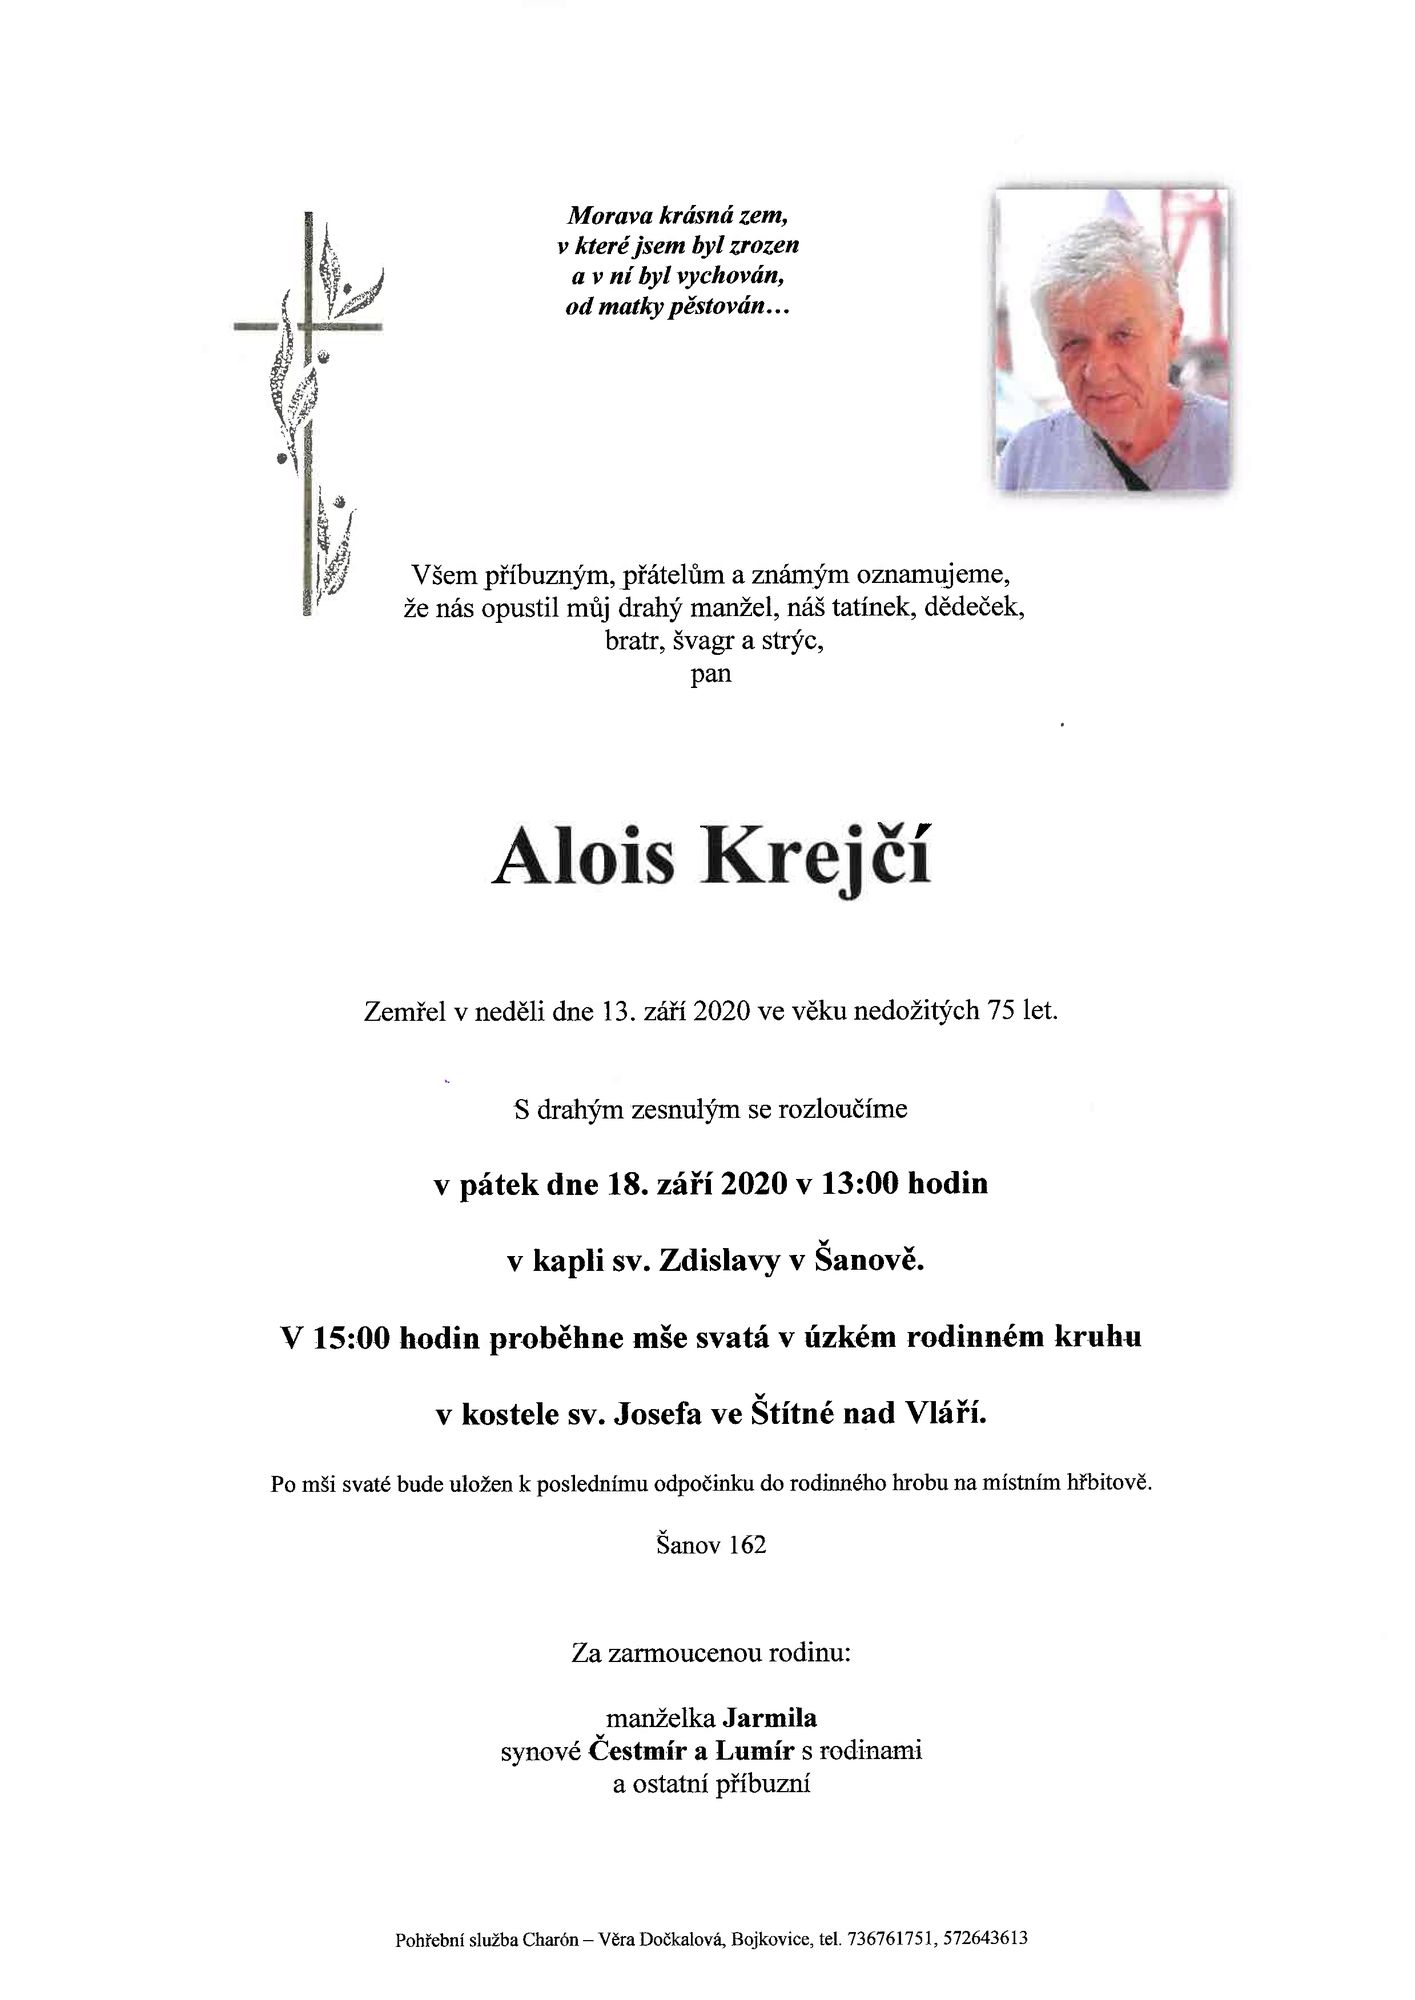 Alois Krejčí